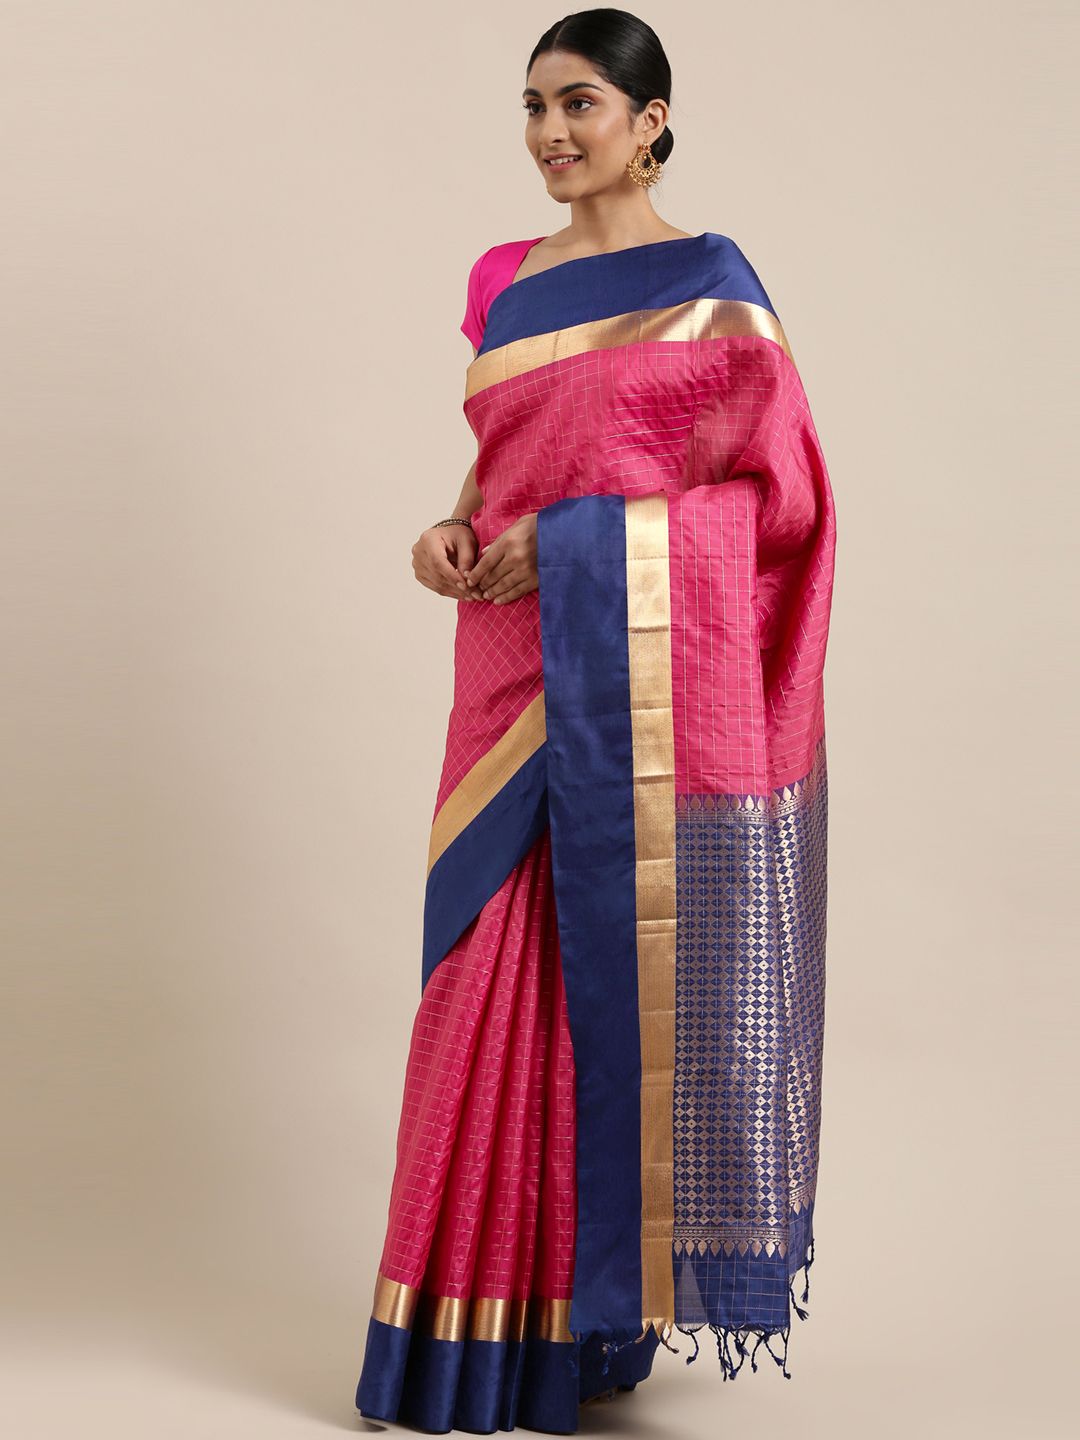 The Chennai Silks Classicate Pink & Golden Checked Zari Pure Silk Kanjeevaram Saree Price in India